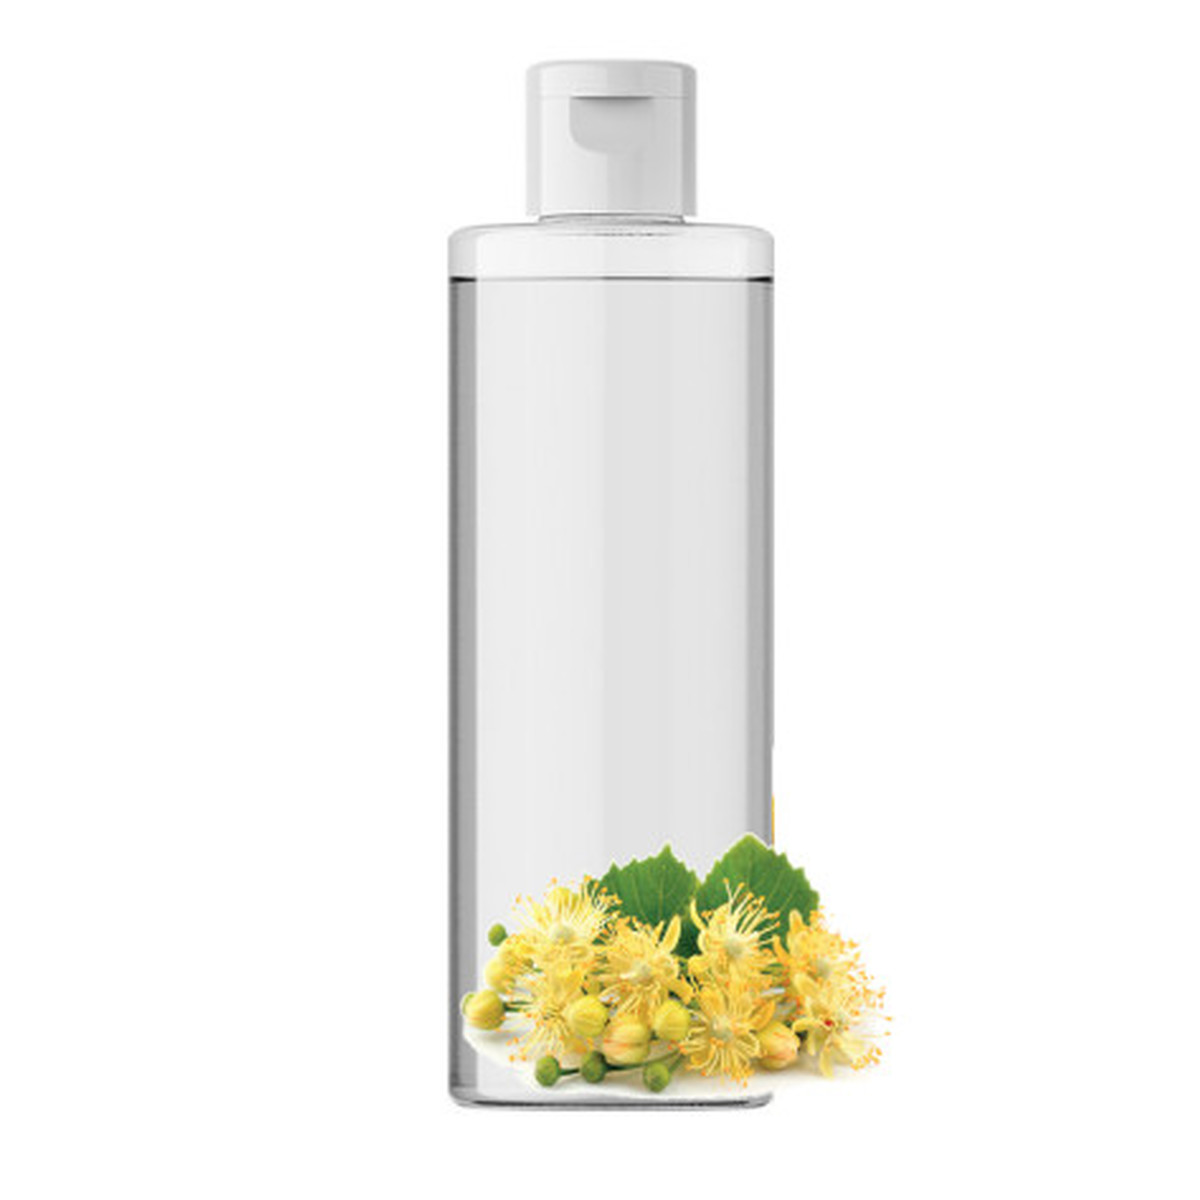 E-Naturalne Hydrolat Z Kwiatów Lipy 100% 100g